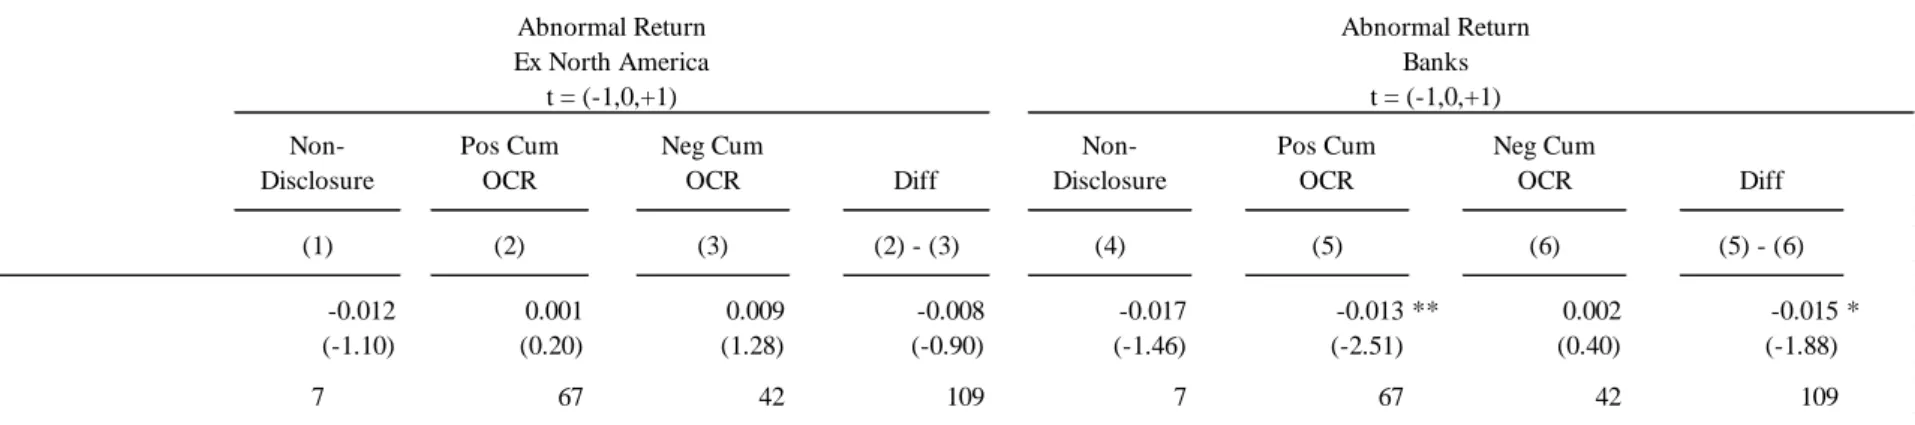 Table 1.5: Descriptive Abnormal Returns   Non-Disclosure Pos Cum OCR Neg Cum OCR Diff  Non-Disclosure Pos Cum OCR Neg Cum OCR Diff (1) (2) (3) (2) - (3) (4) (5) (6) (5) - (6) Mean -0.012 0.001 0.009 -0.008 -0.017 -0.013 ** 0.002 -0.015 * (-1.10) (0.20) (1.